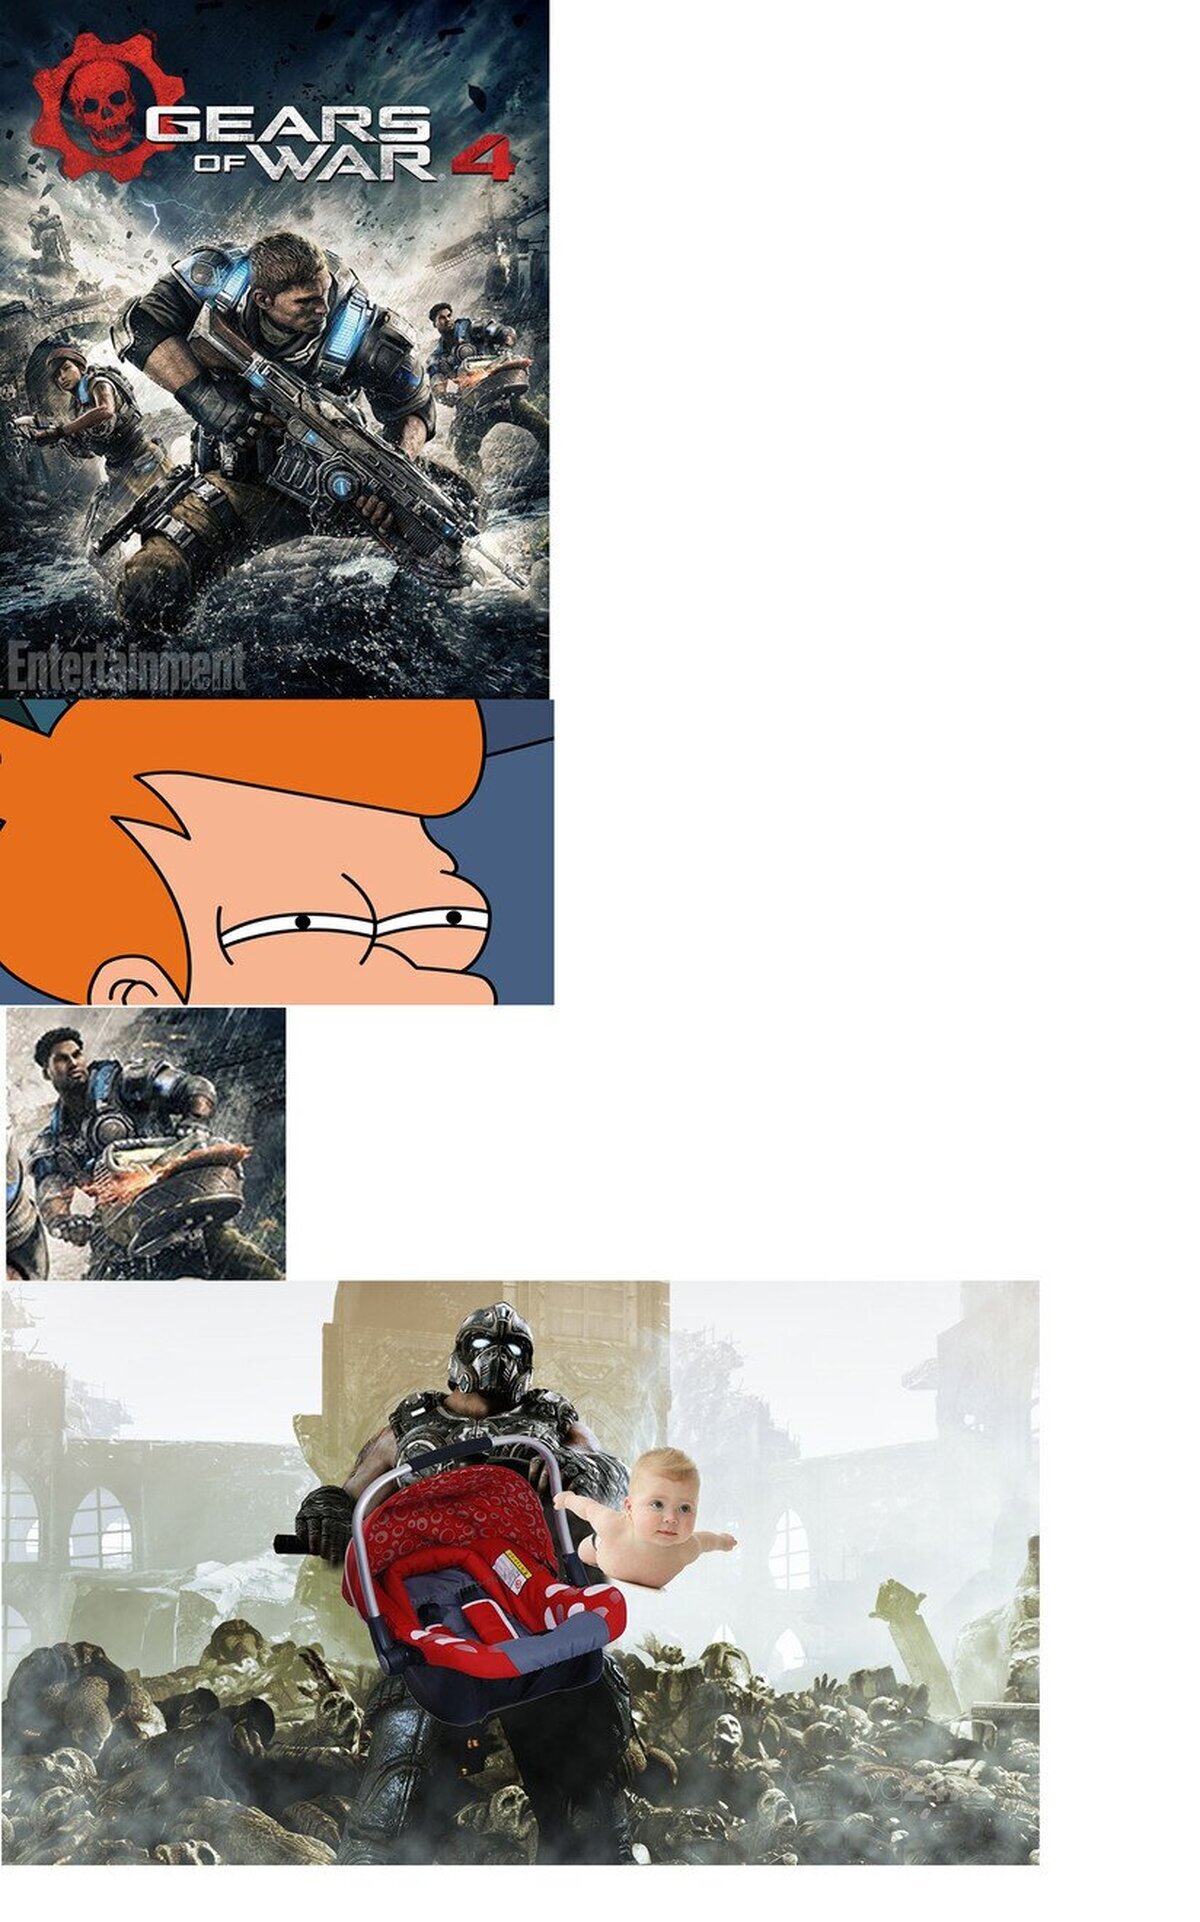 ¿Alguien se ha fijado en el nuevo póster de Gears of War 4?